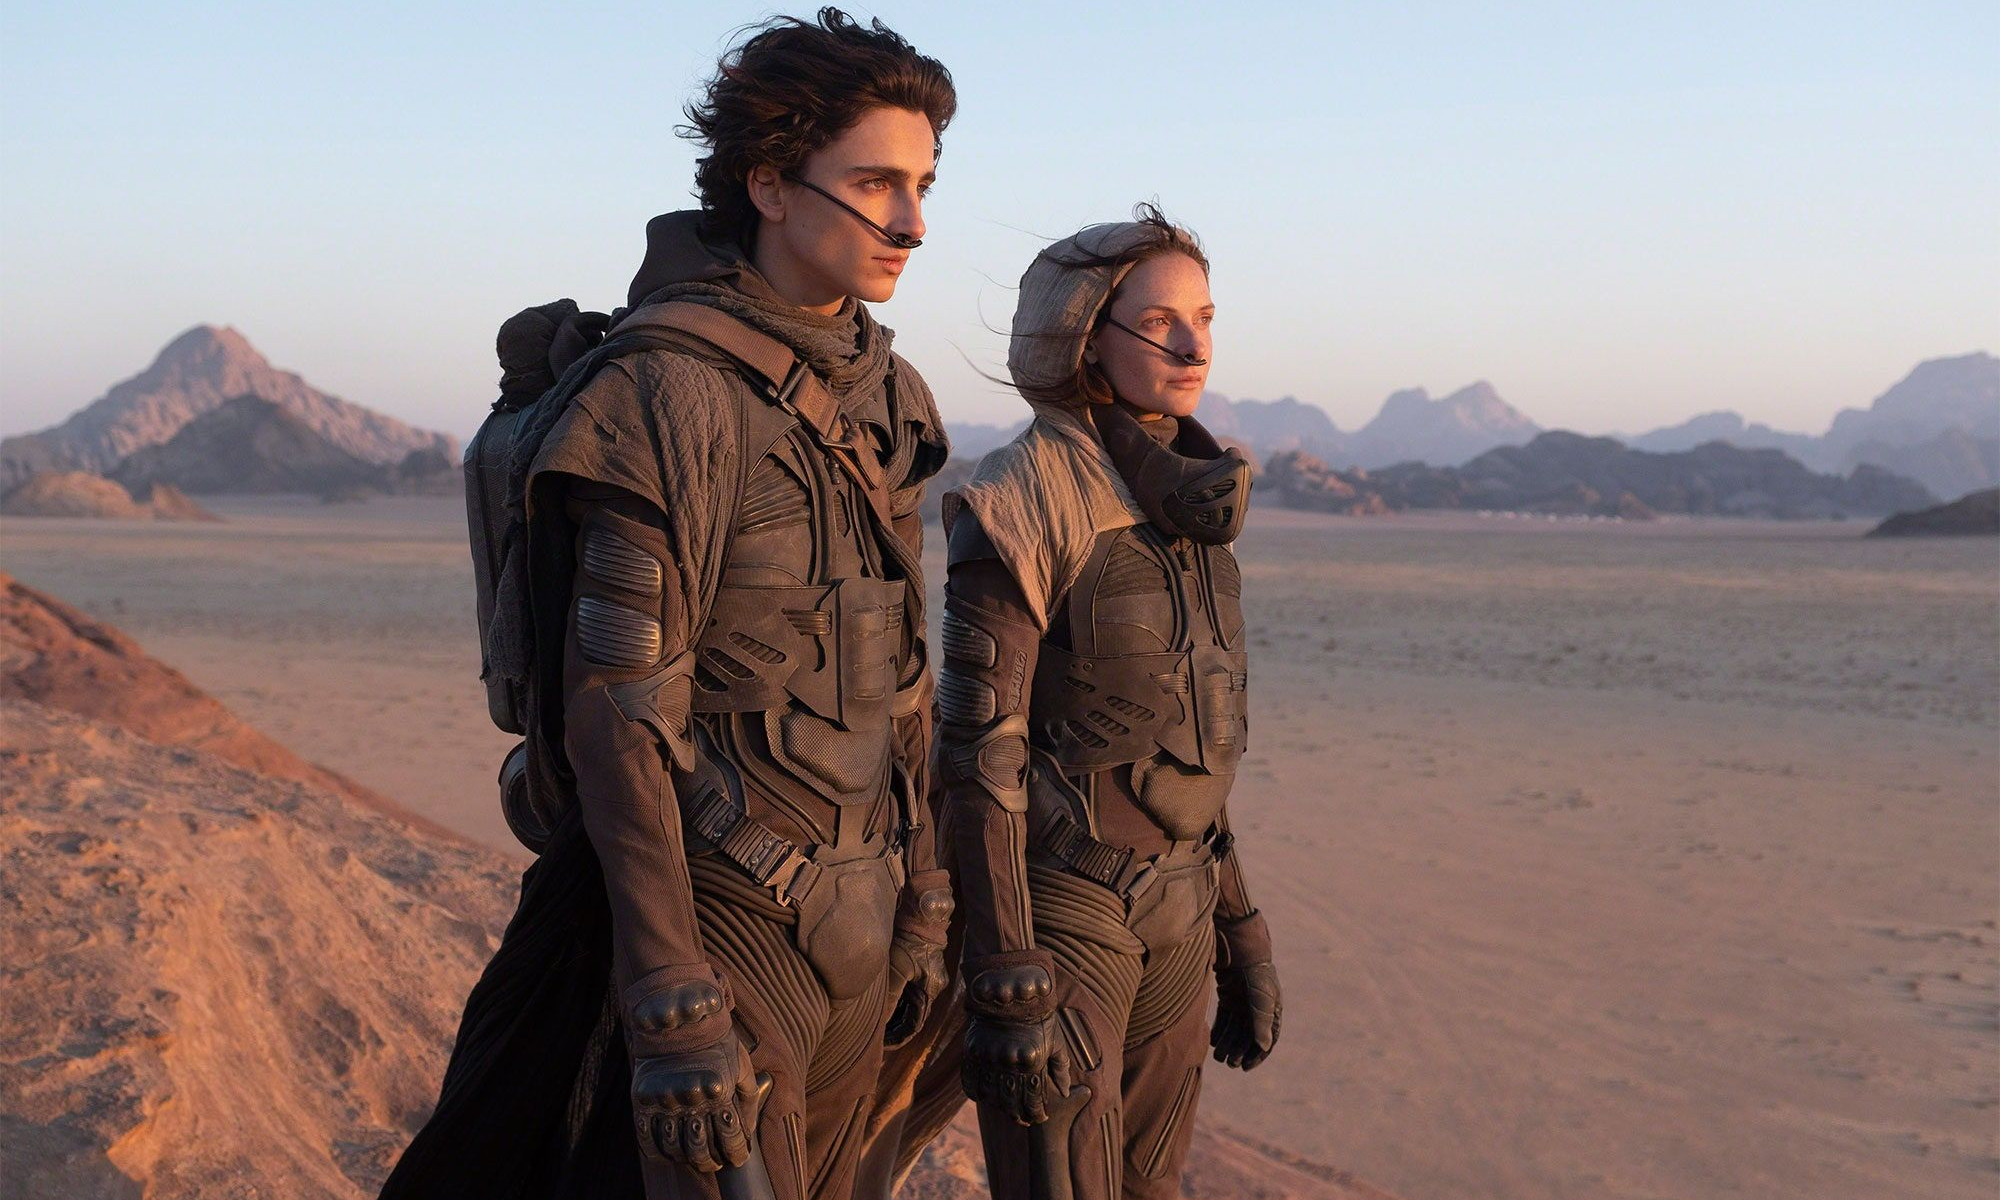 La ciencia de Dune: ¿Podríamos terraformar Marte?